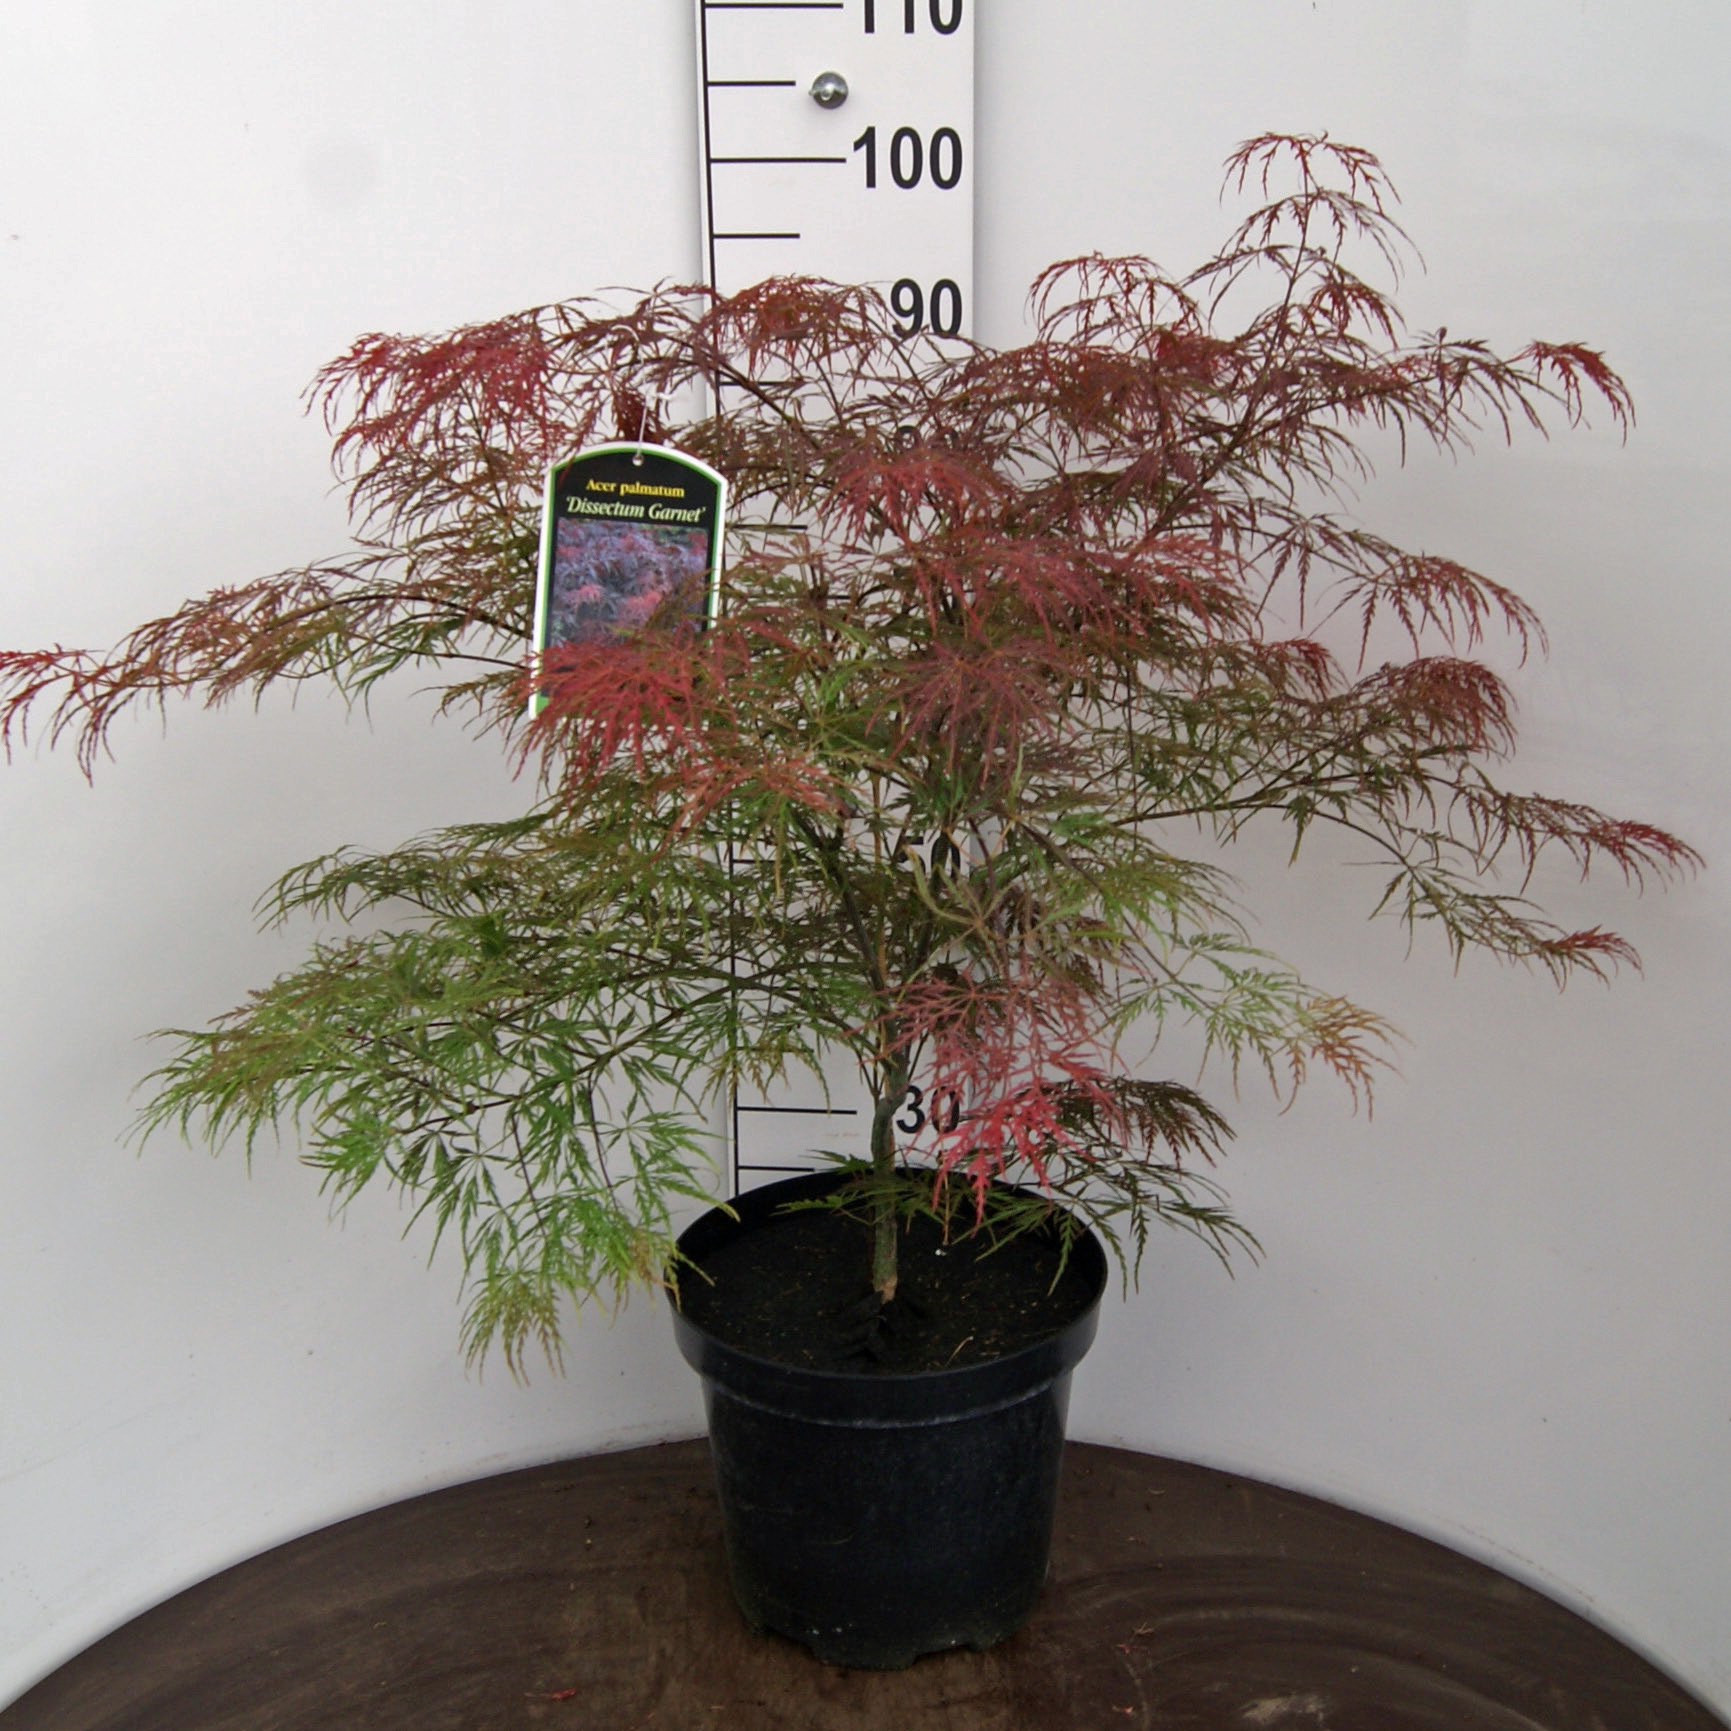 Acer Palmatum 'Dissectum Garnet', 60-80cm, 12L container